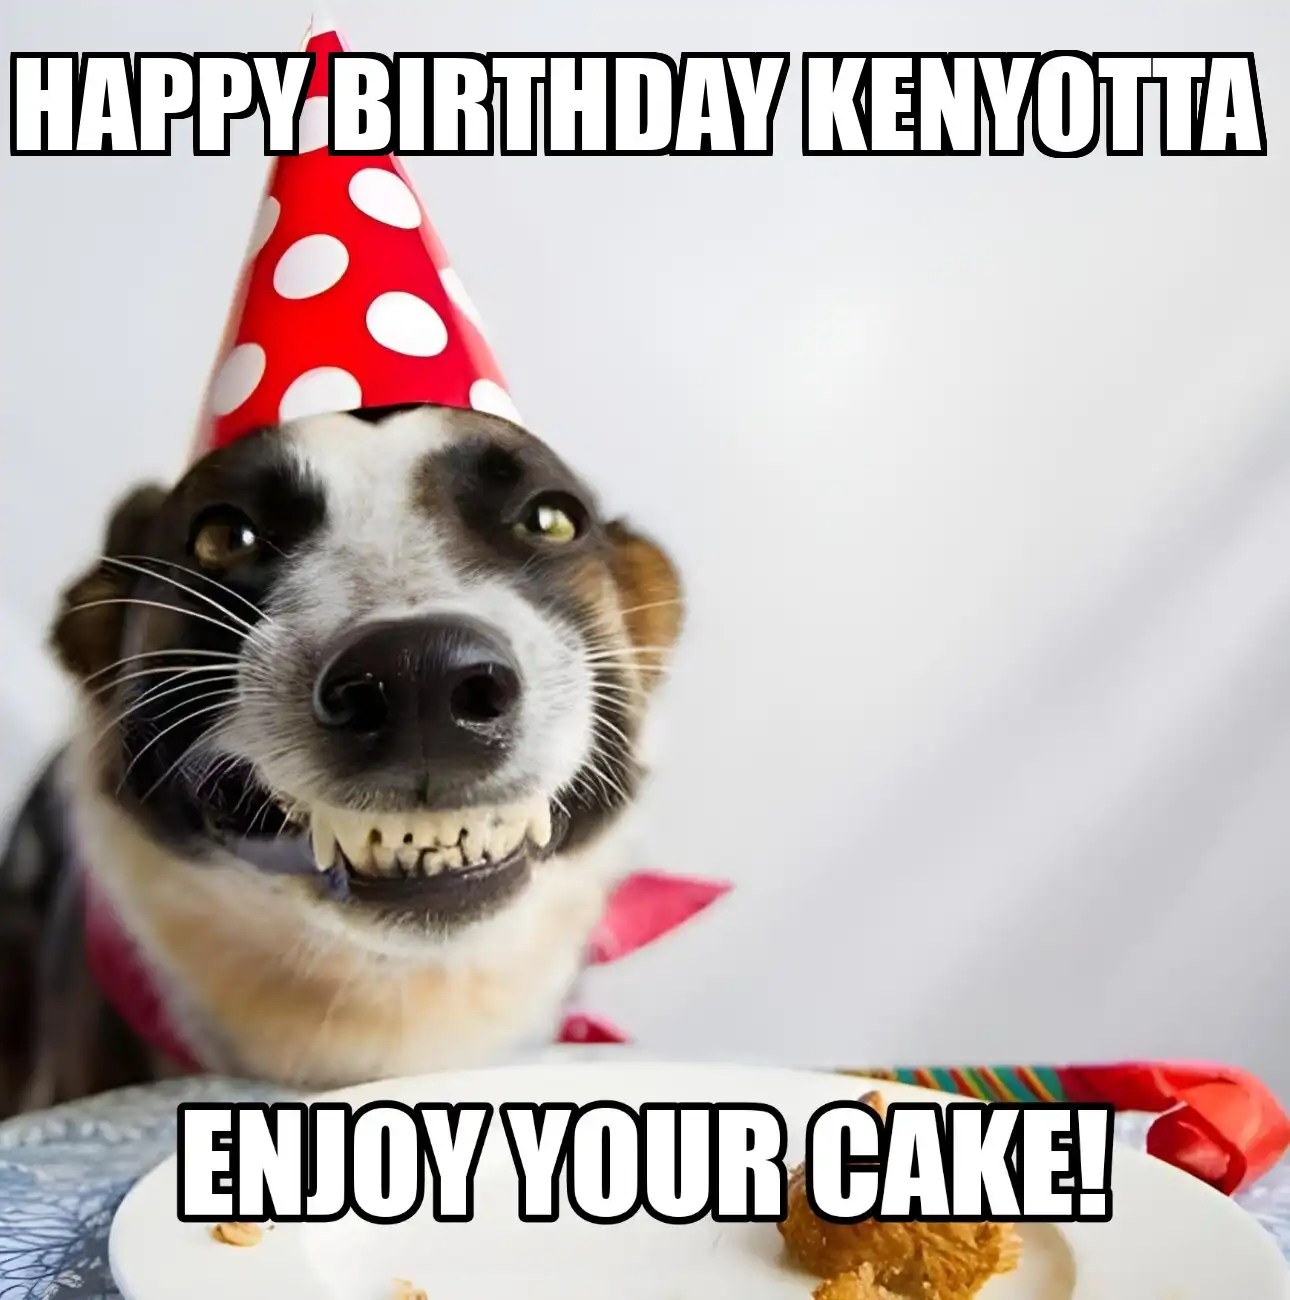 Happy Birthday Kenyotta Enjoy Your Cake Dog Meme